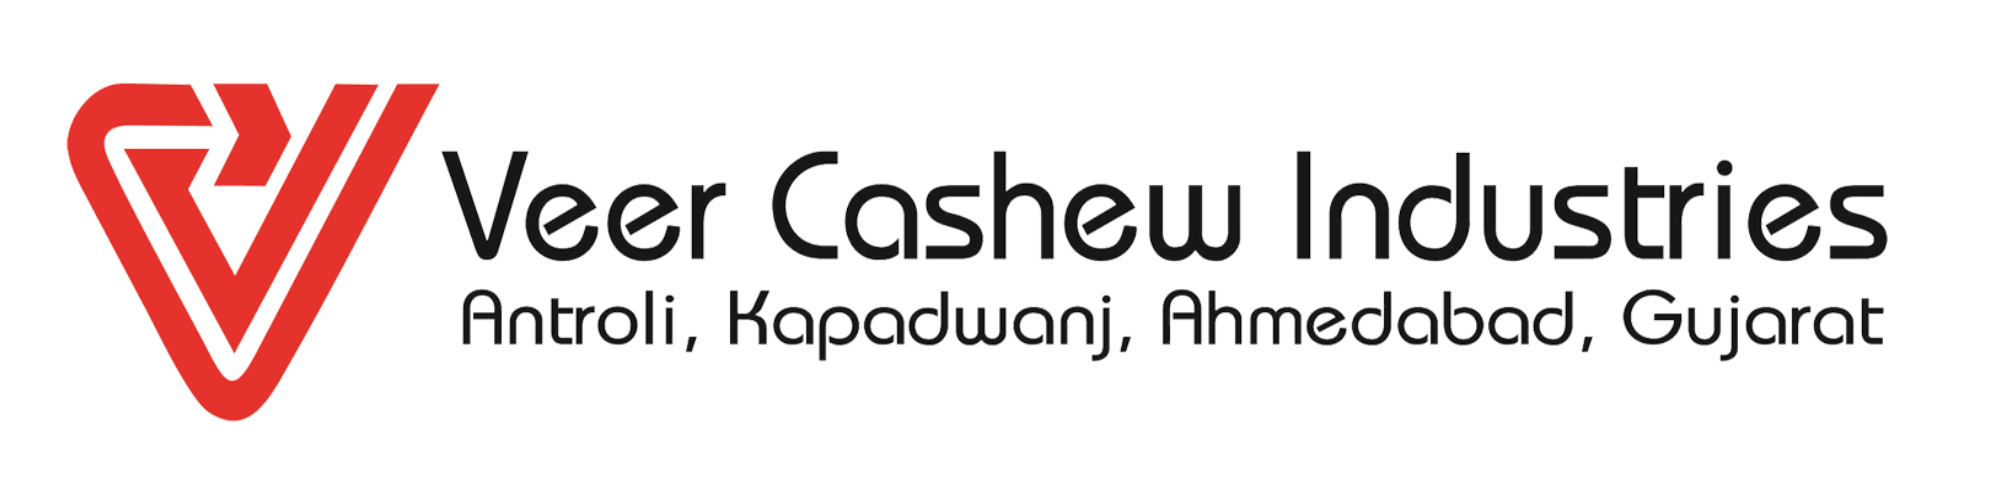 Veer Cashew Industries